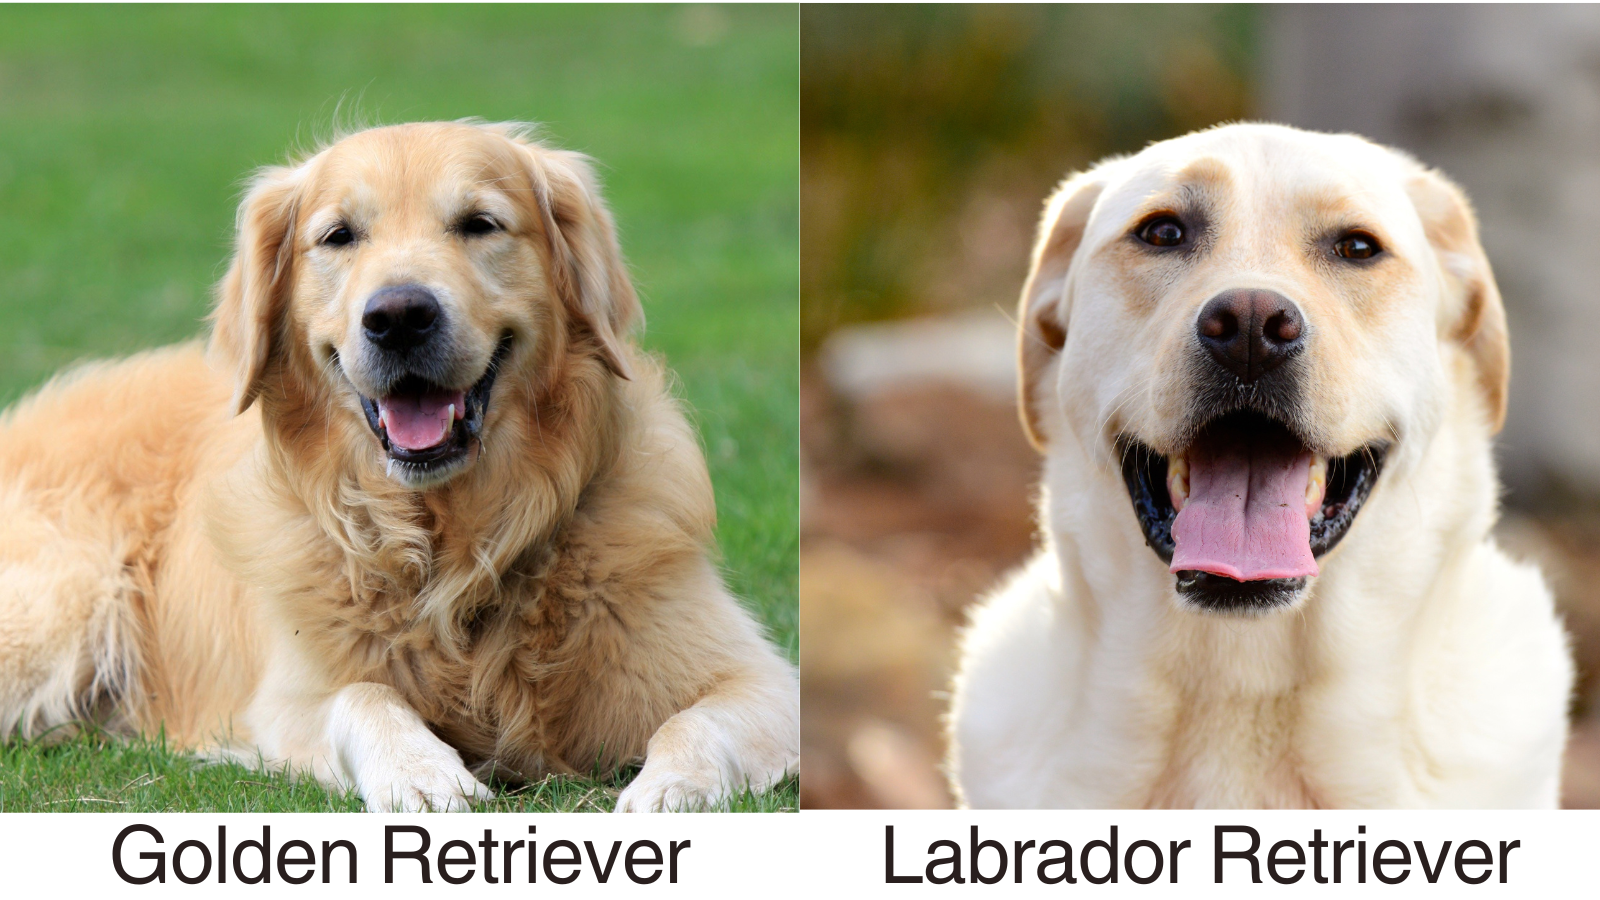 A side by side of the Parent breeds Golden Retriever and Labrador Retriever